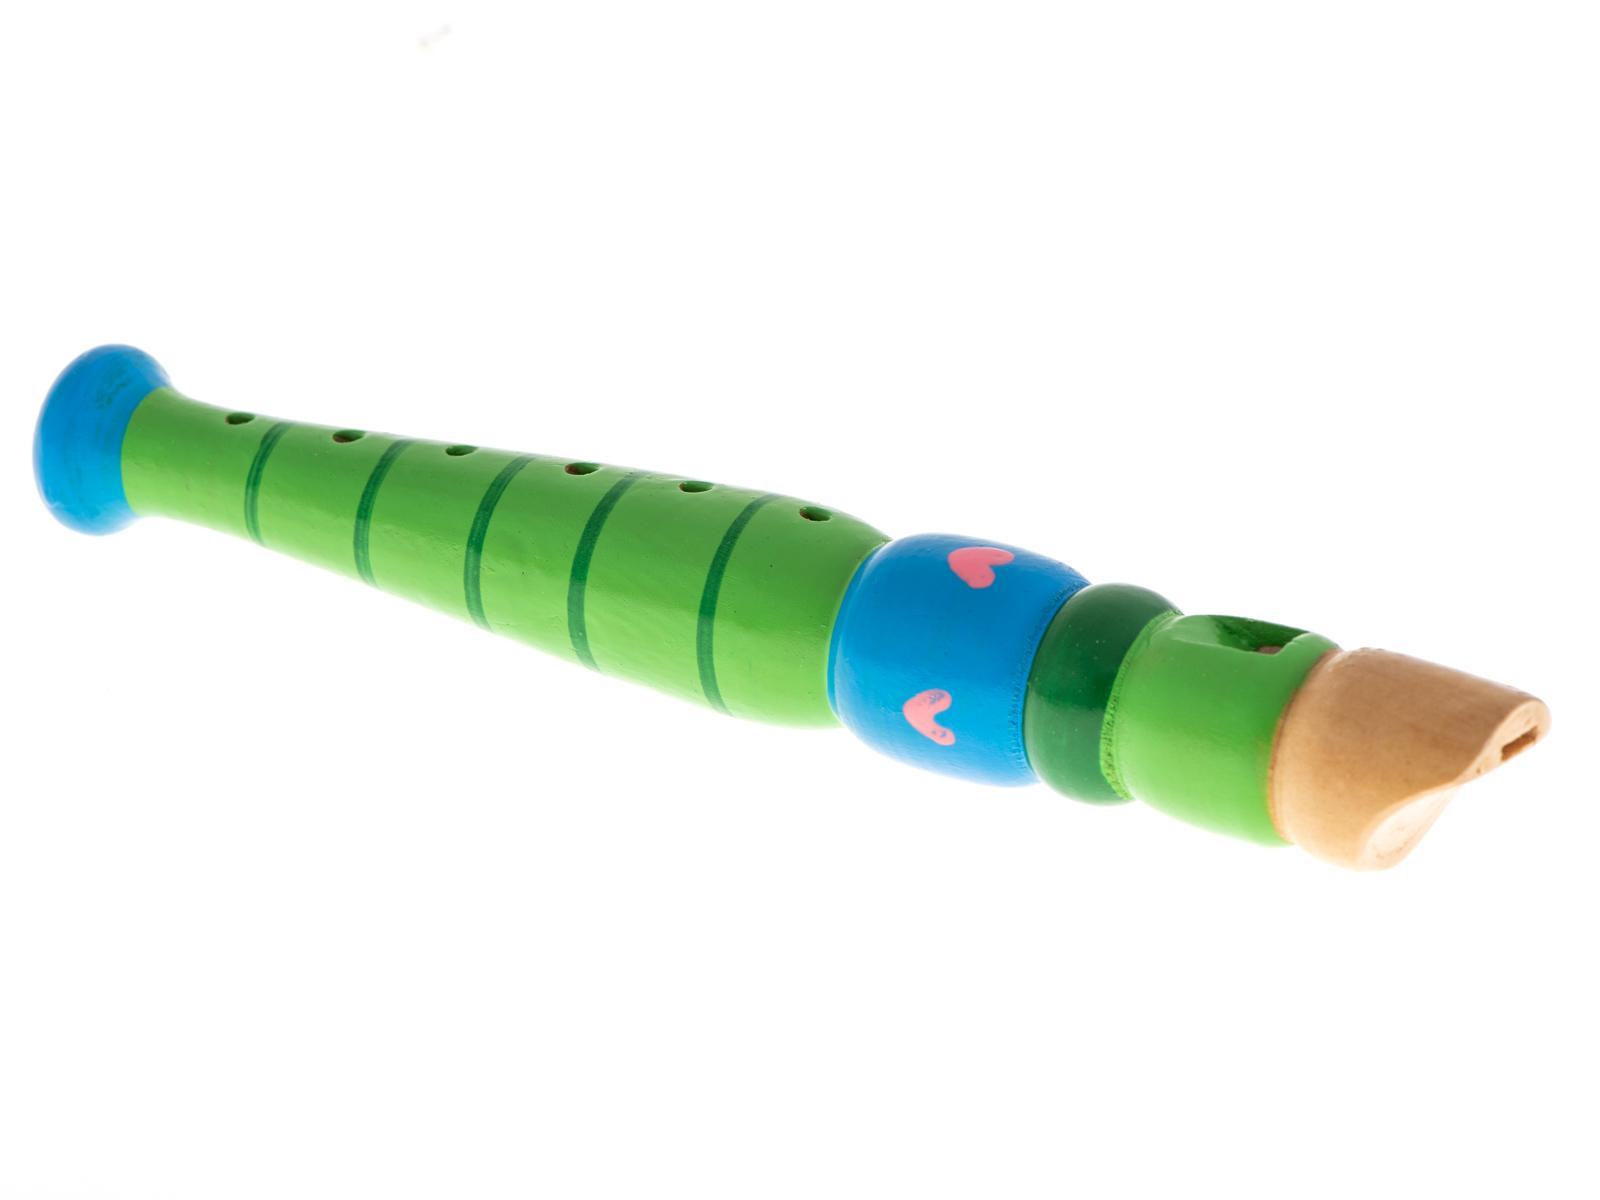 Flet prosty drewniany instrument muzyczny do nauki muzyki dla dzieci 20 cm nr. 4